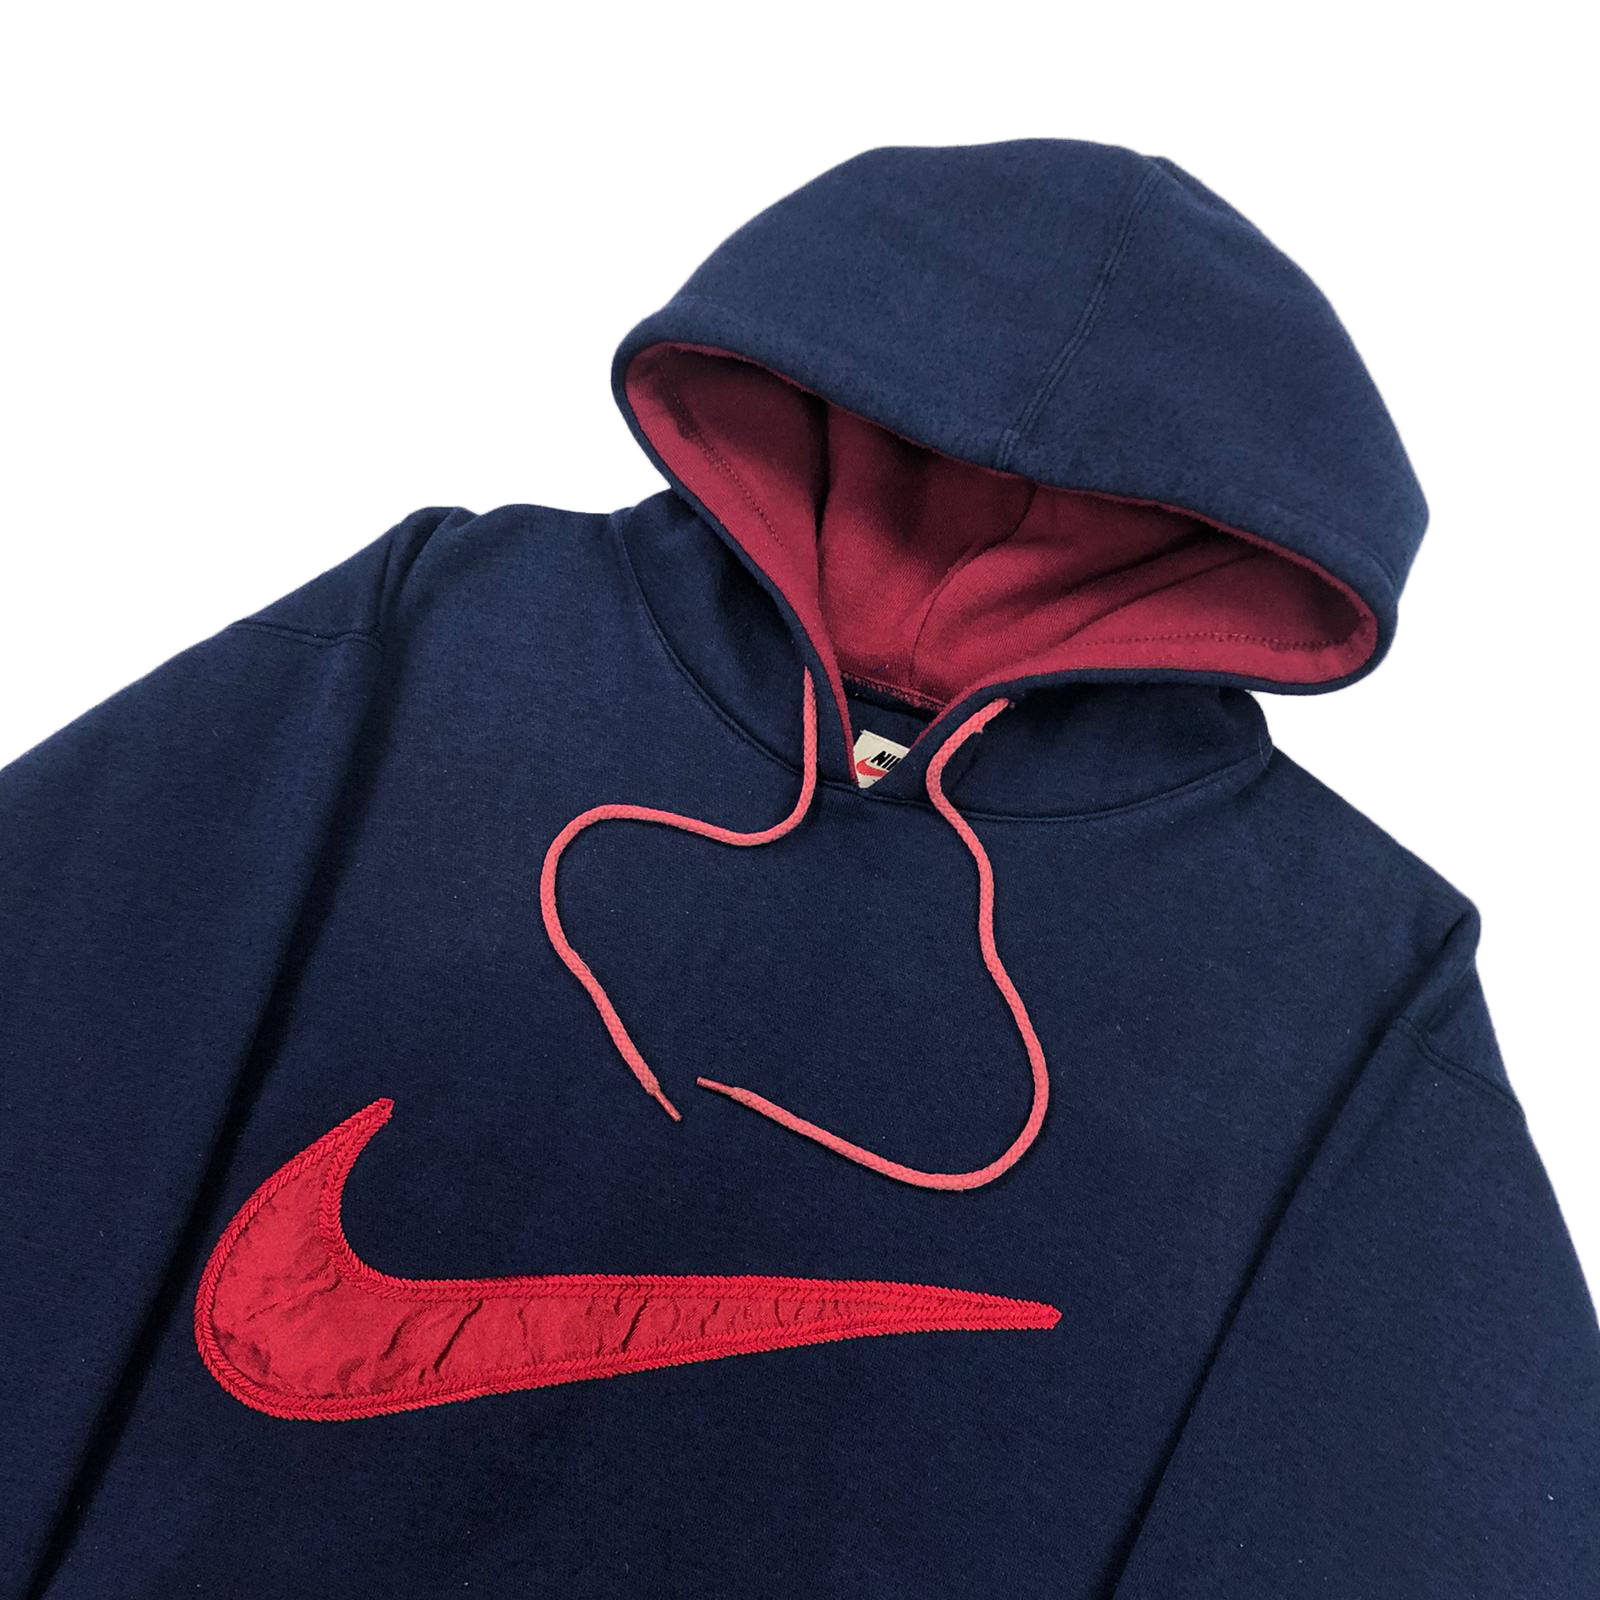 Nike hoodie